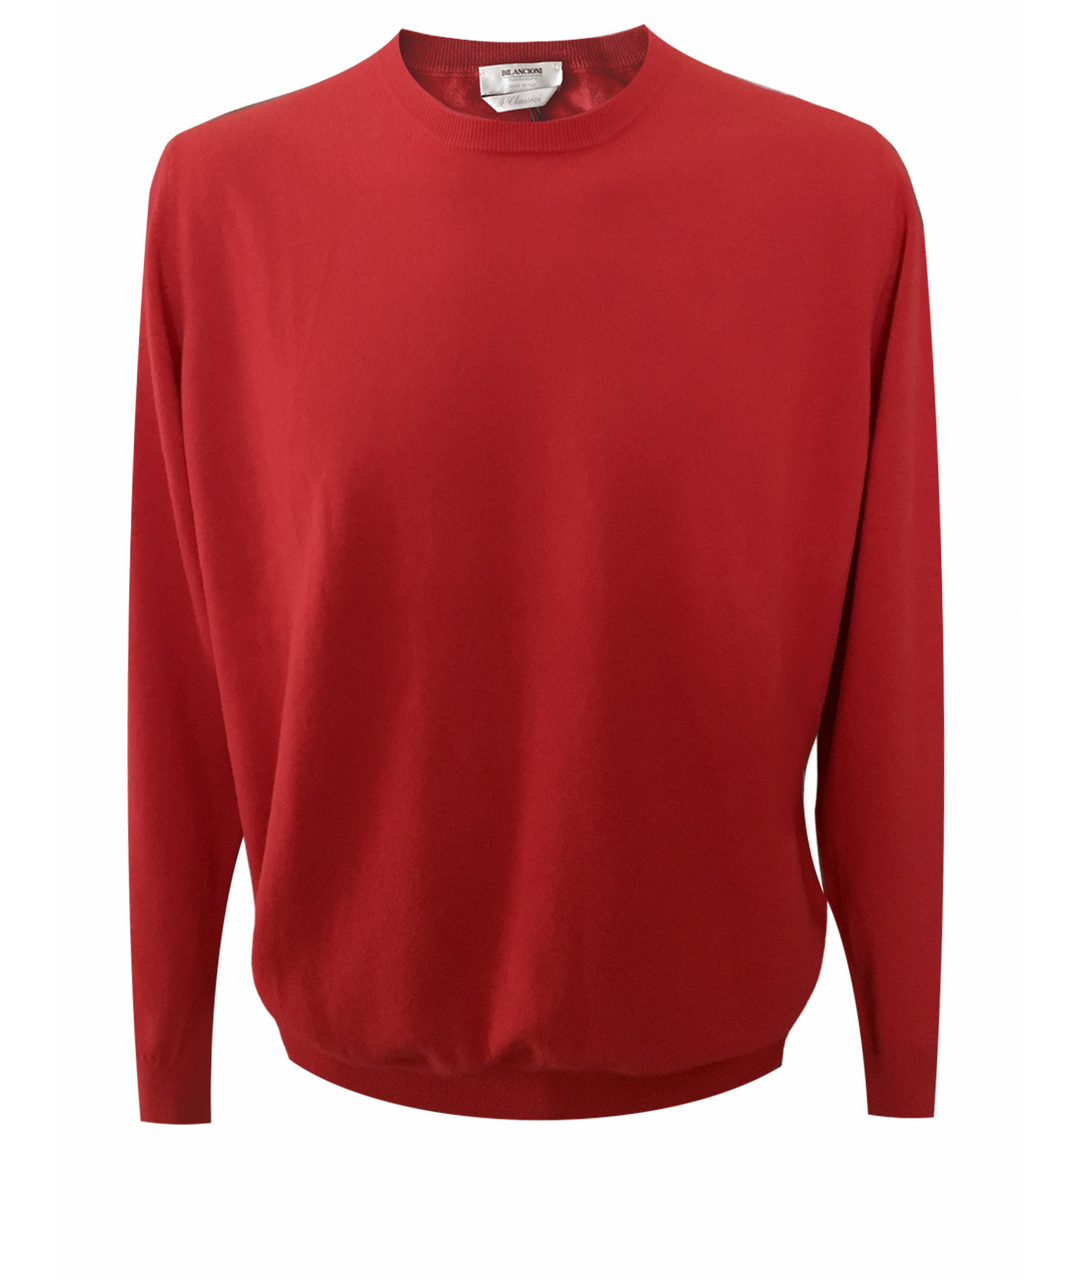 BILANCIONI Красный кашемировый джемпер / свитер, фото 1